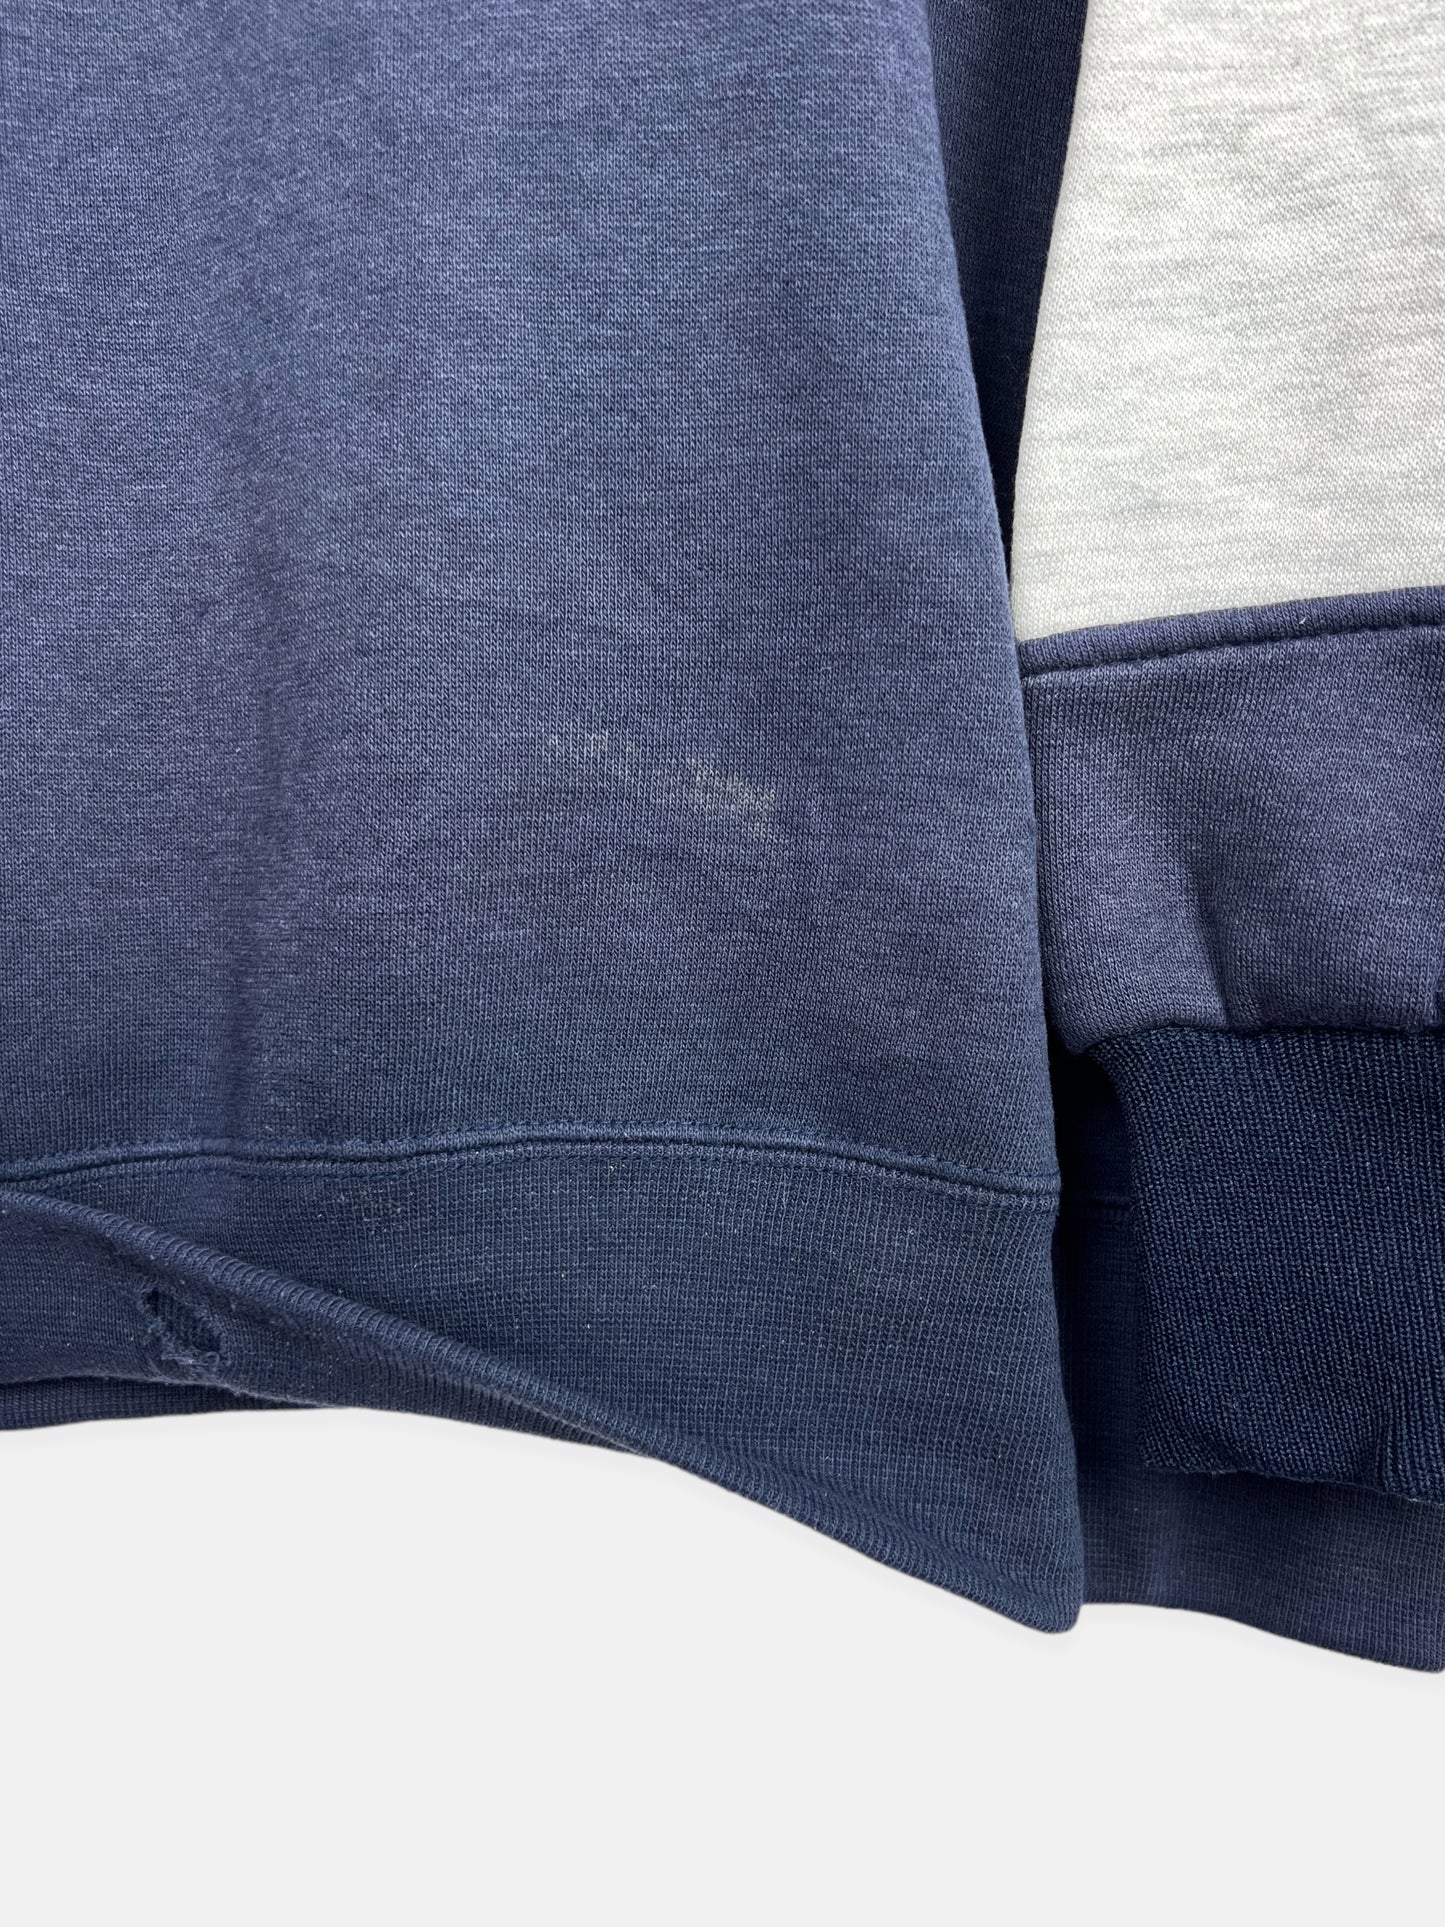 90's Georgetown Hoyas Embroidered Vintage Sweatshirt Size XL